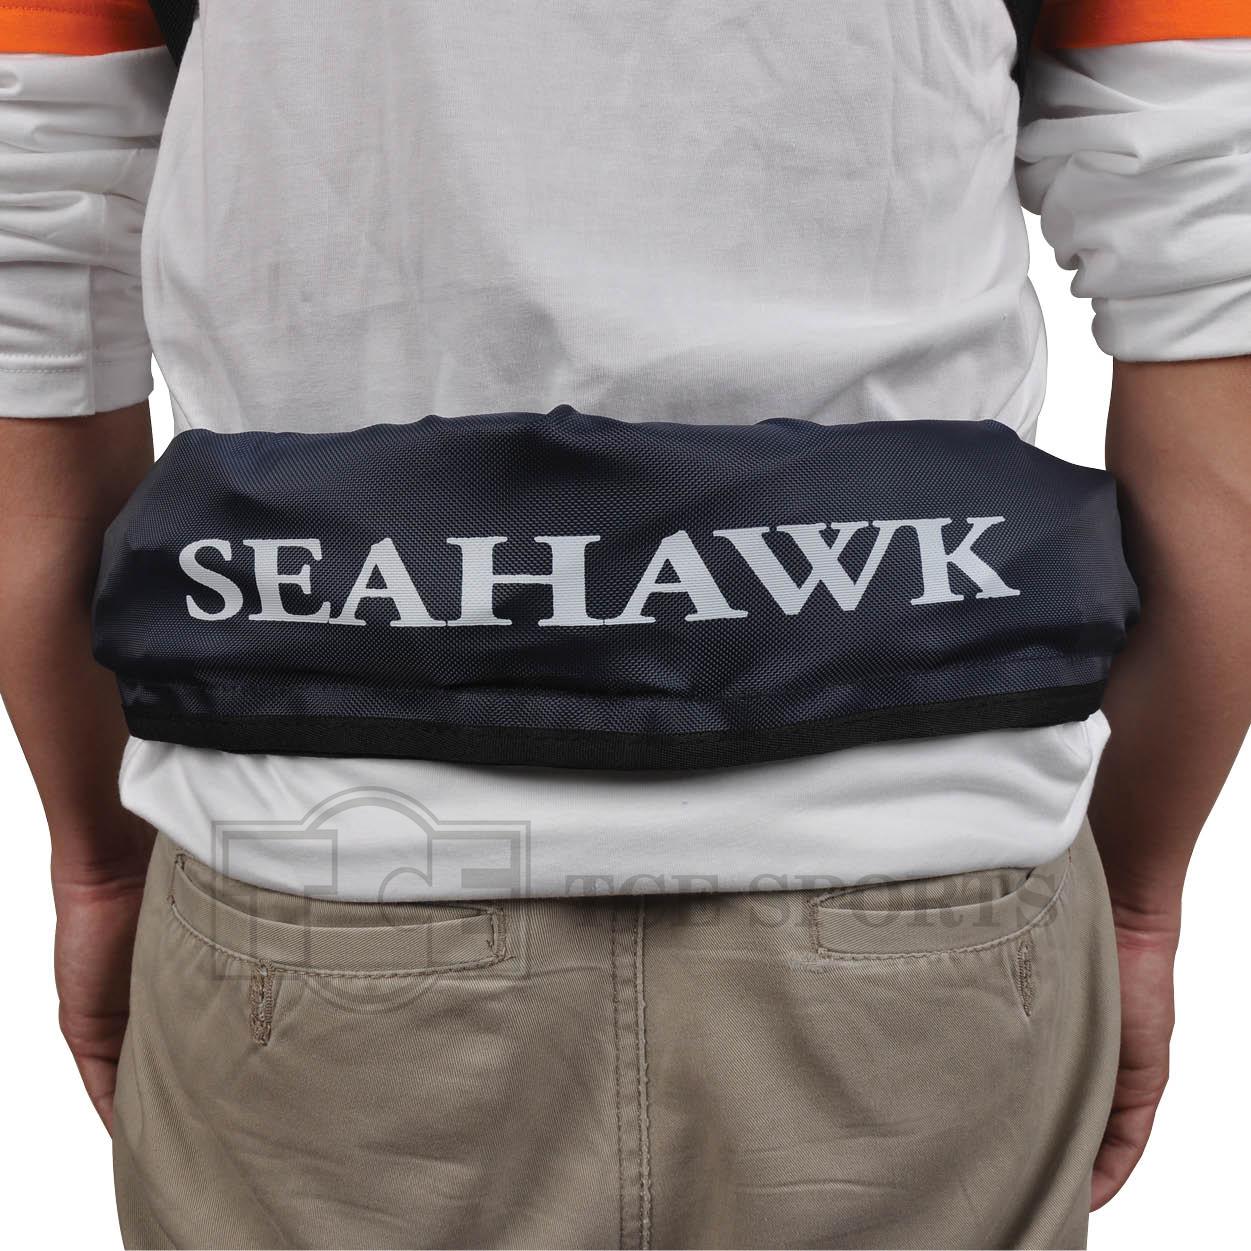 Seahawk - Life Vest - DHI-016 07